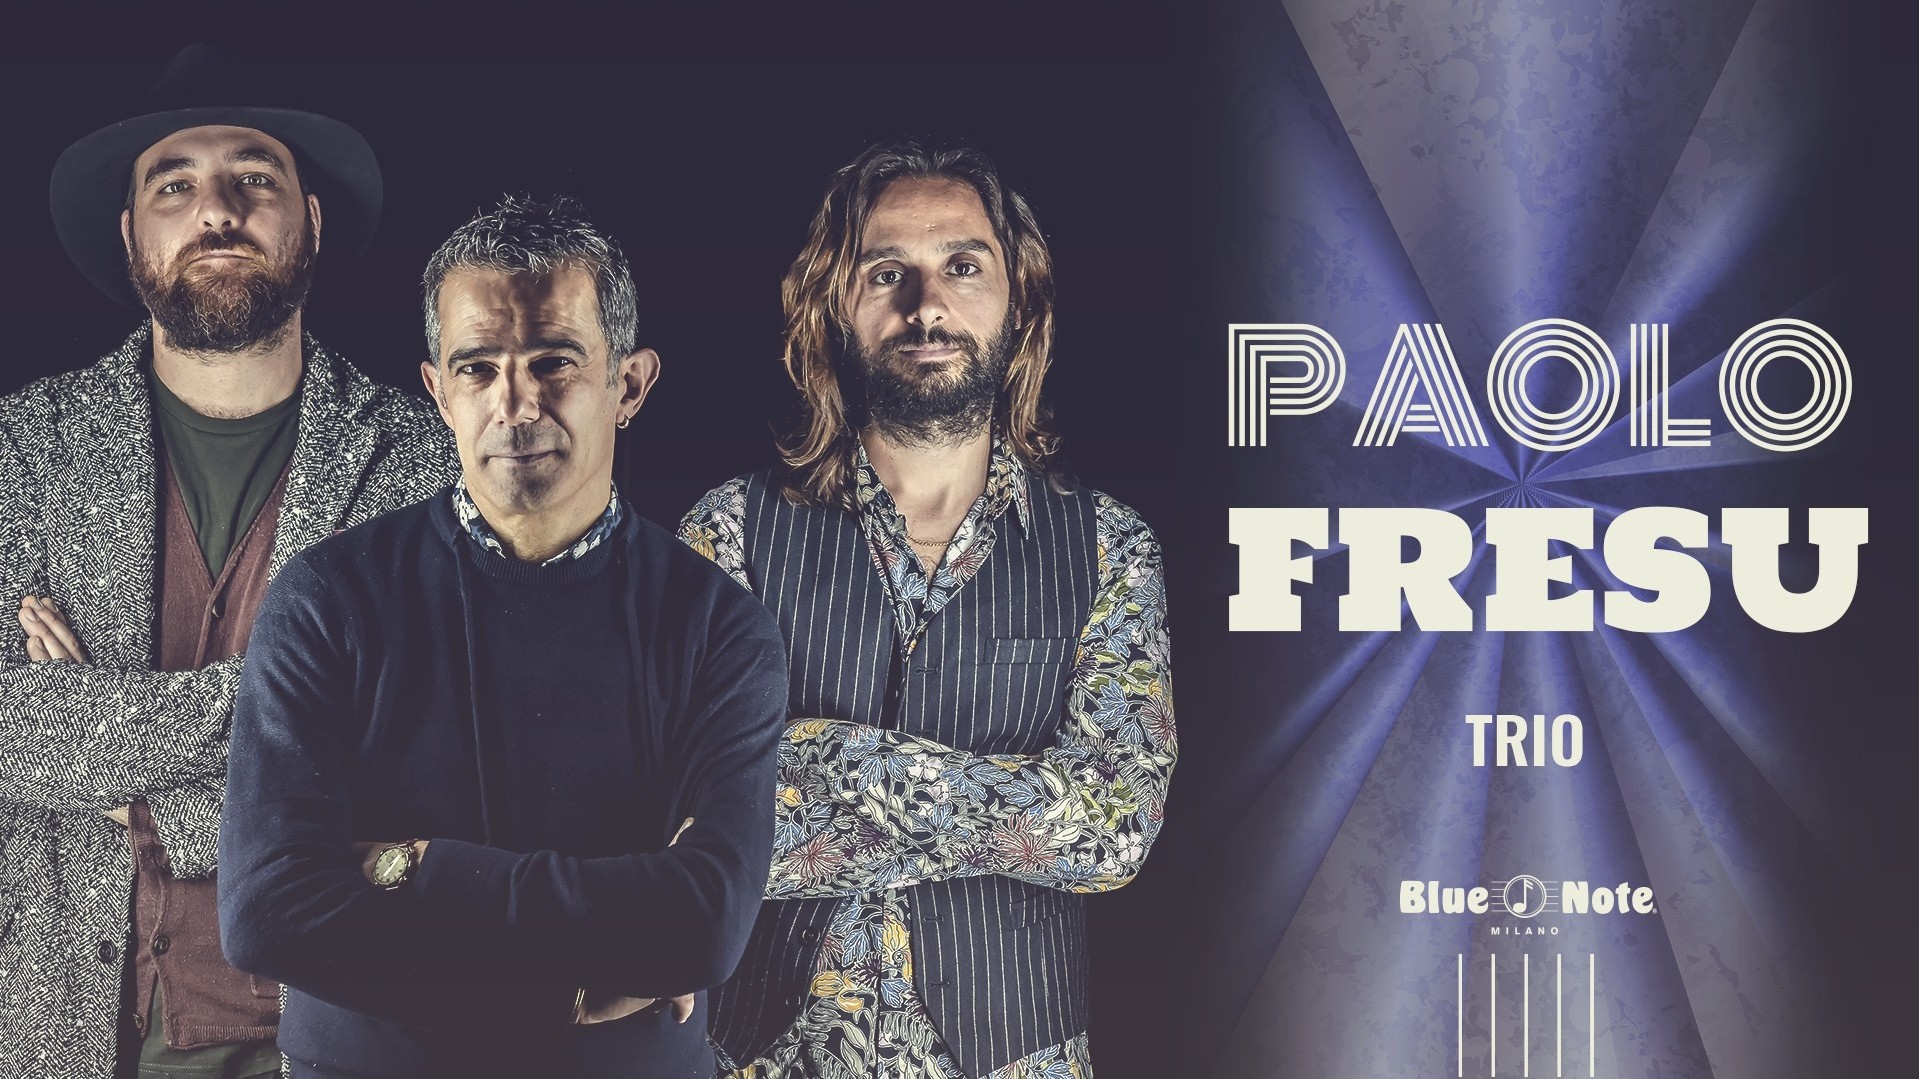 Paolo Fresu Trio